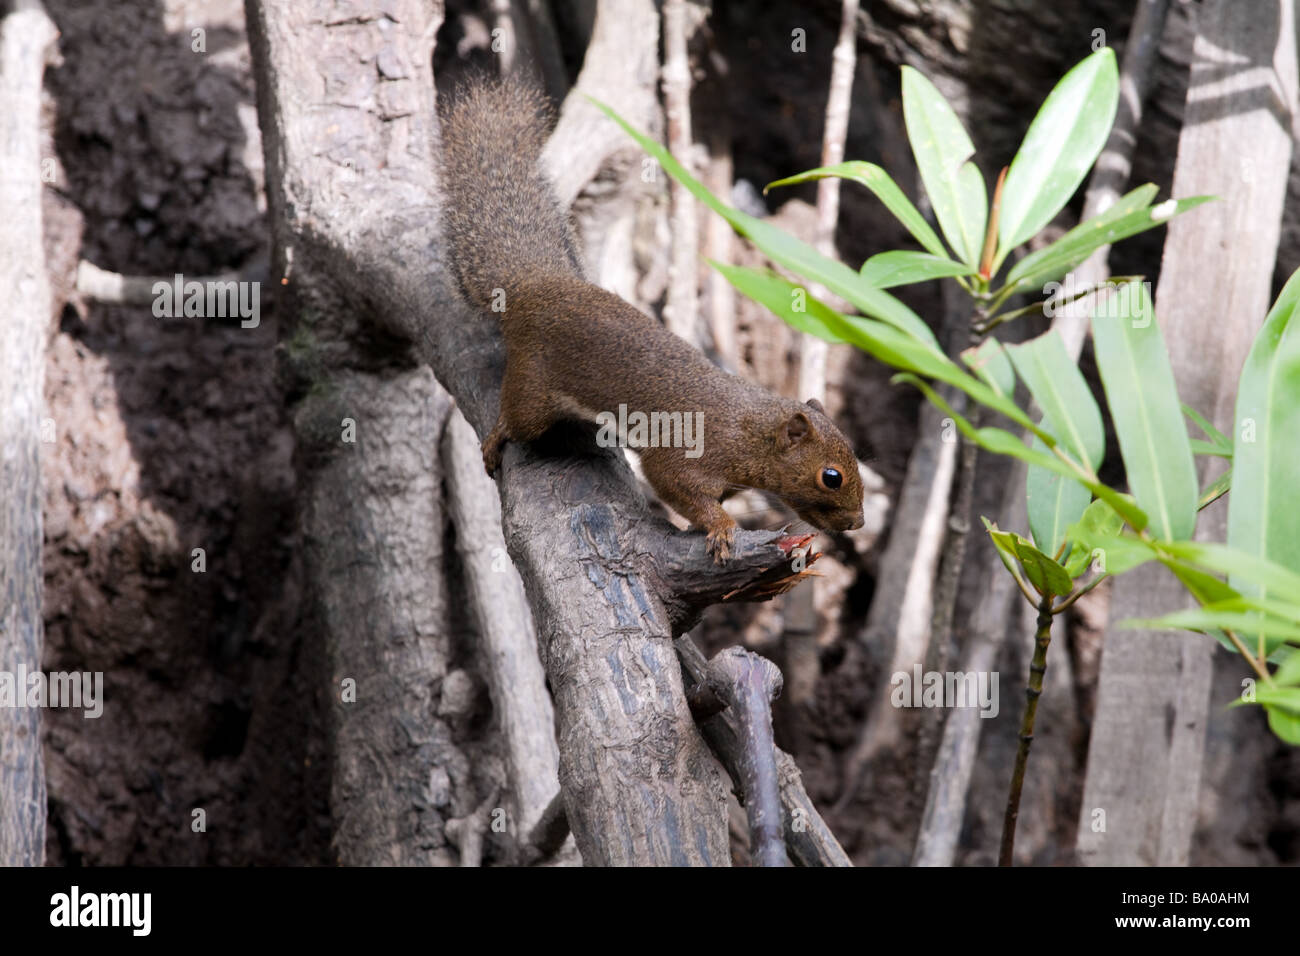 Un écureuil plantain callosciurus notatus aussi appelé Écureuil Oriental ou écureuil tricolore sur un arbre de la mangrove Sabah Malaisie Banque D'Images